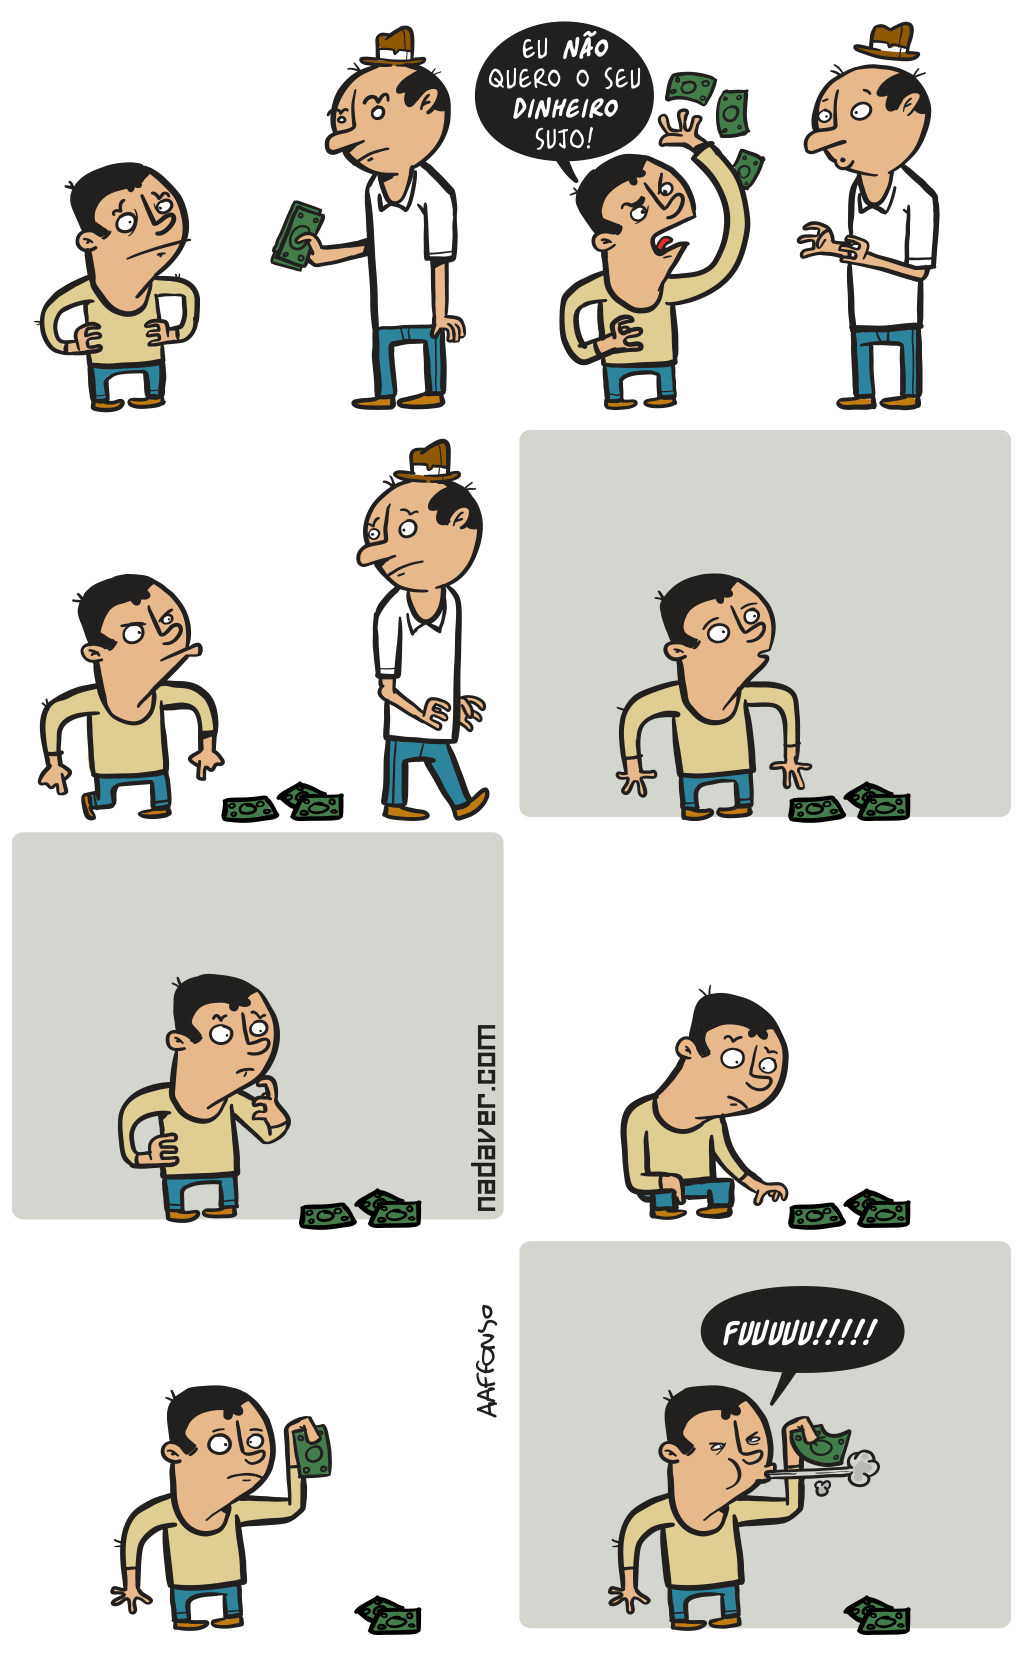 dinheiro